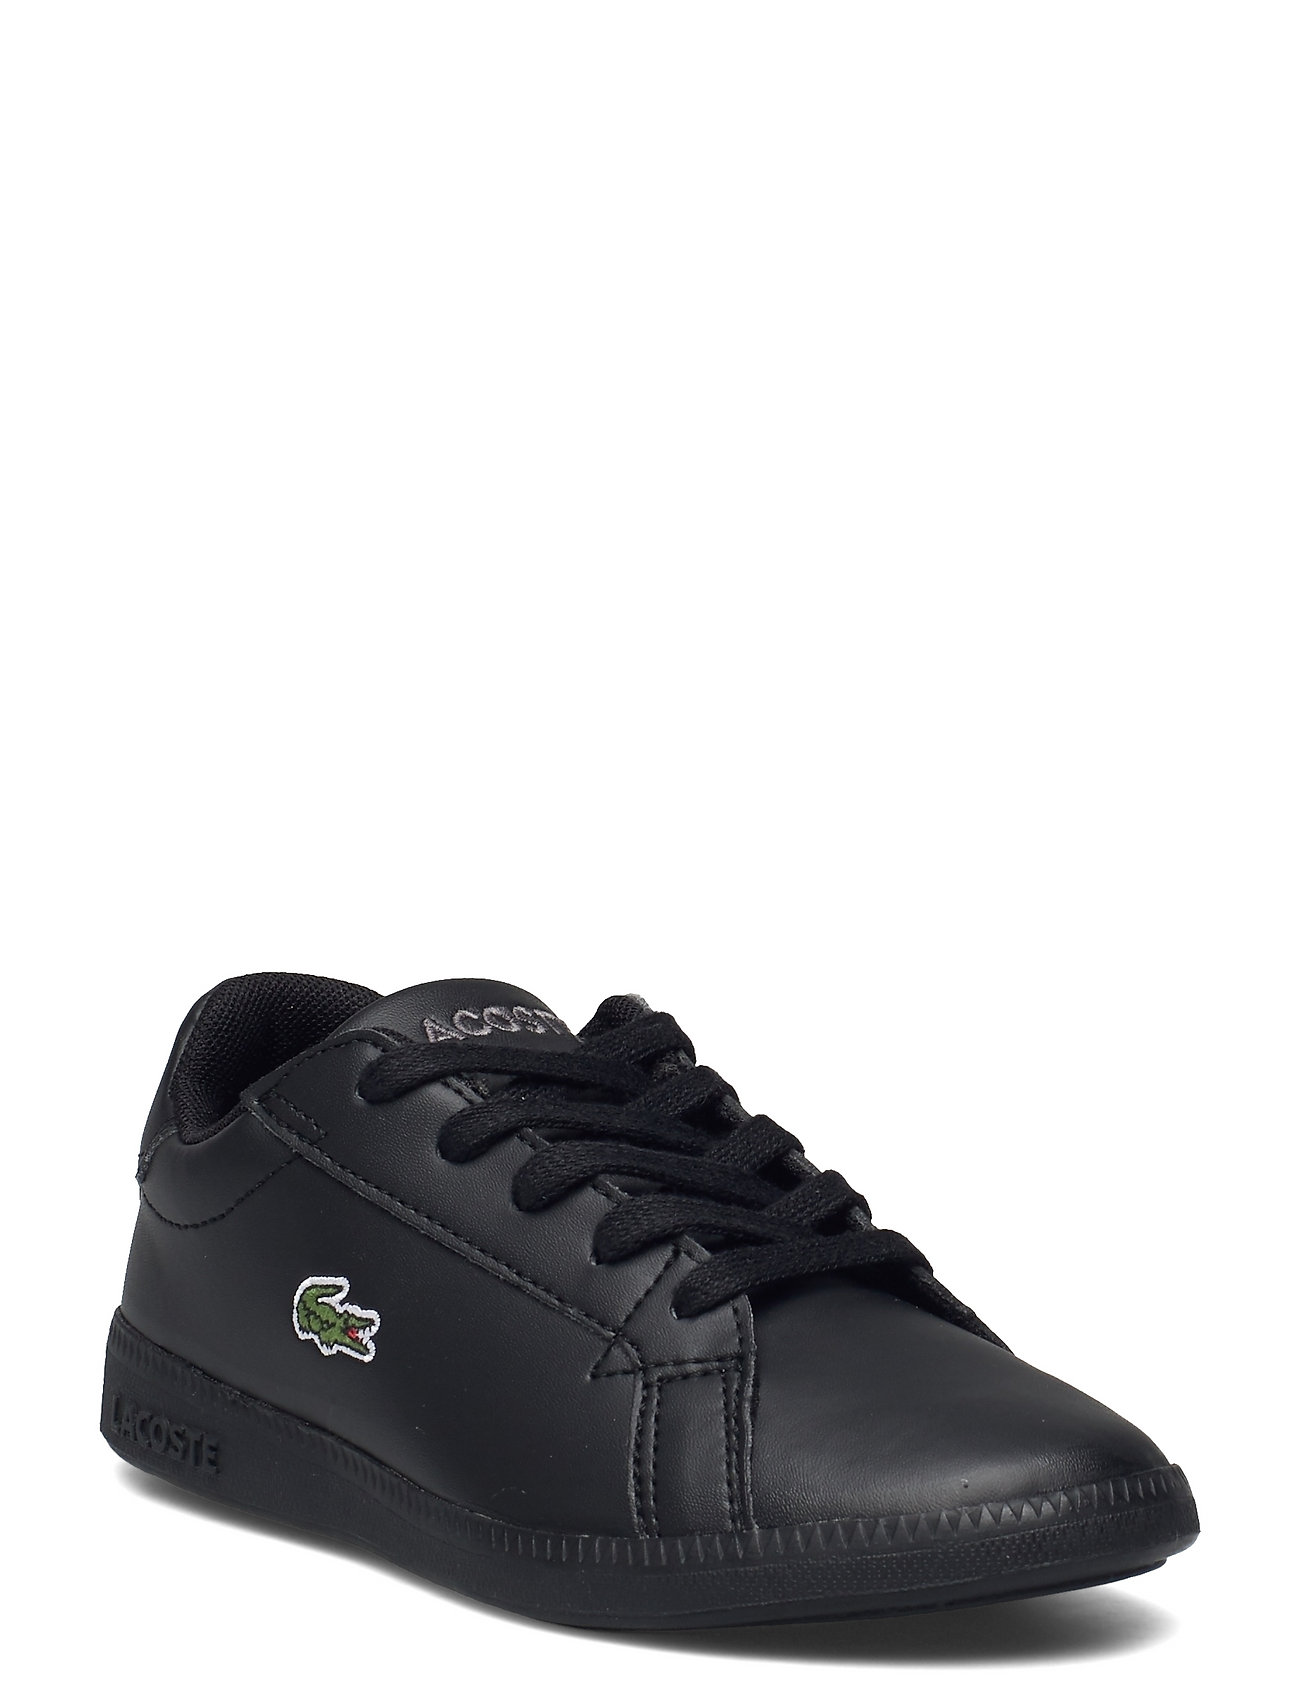 Lacoste Shoes Graduate Bl 21 1 Suc (Blk/blk 205.88 kr Stort designer mærker | Booztlet.com